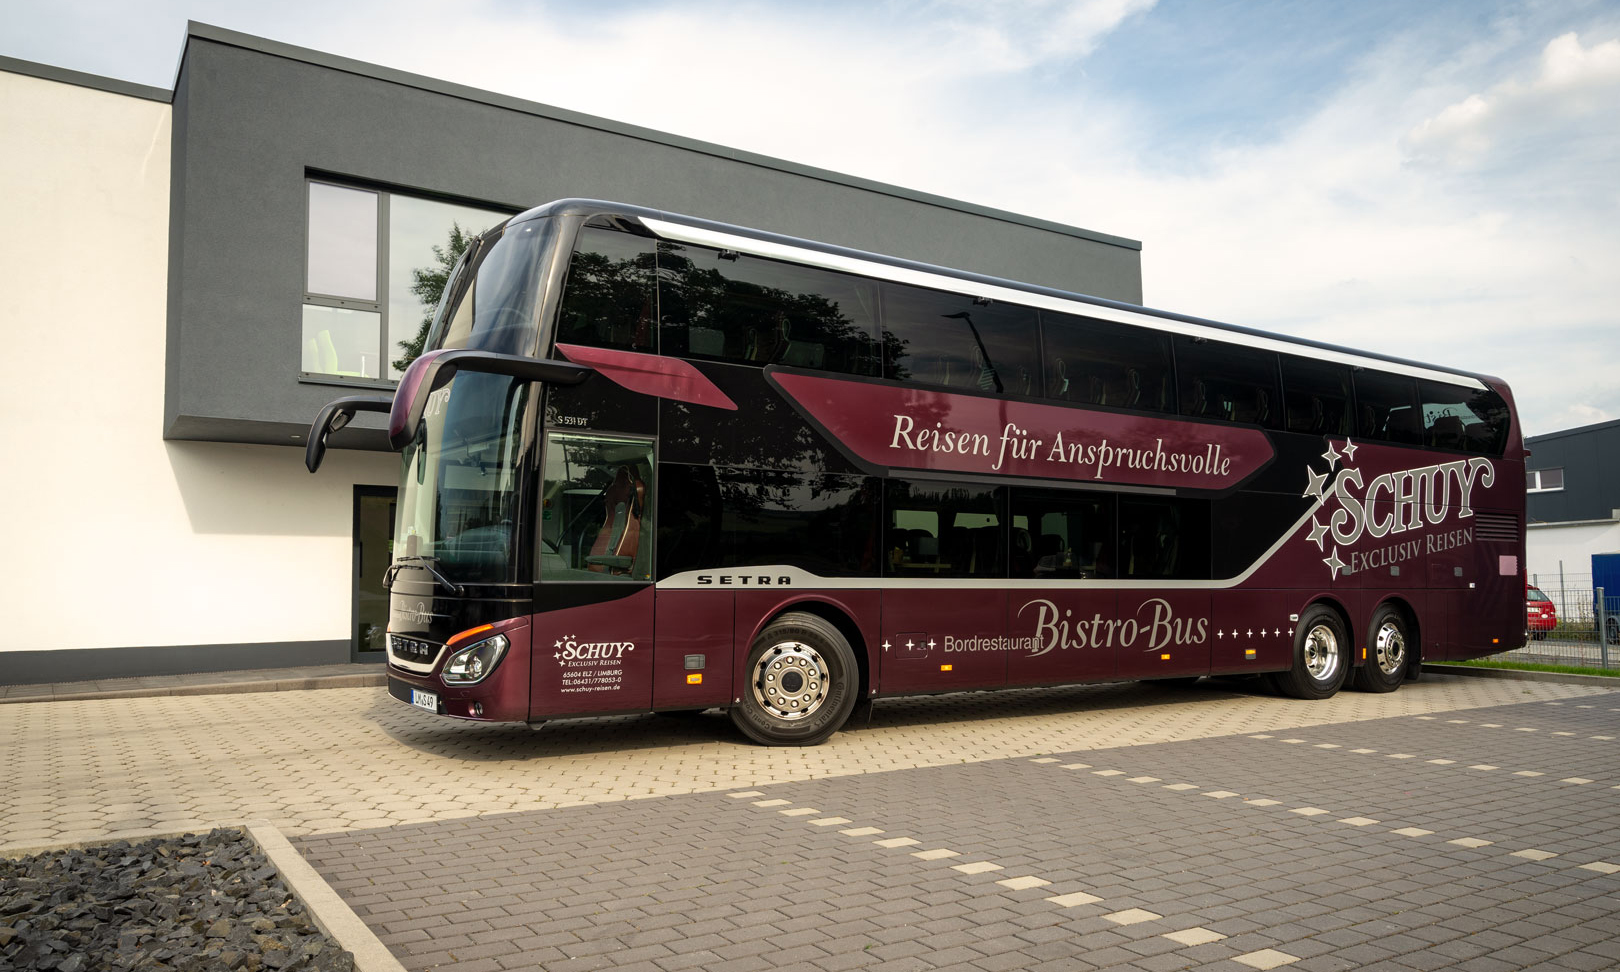 Schuy Exclusiv Reisen_Bistro-Bus_5 Superior Bistro Bus Setra